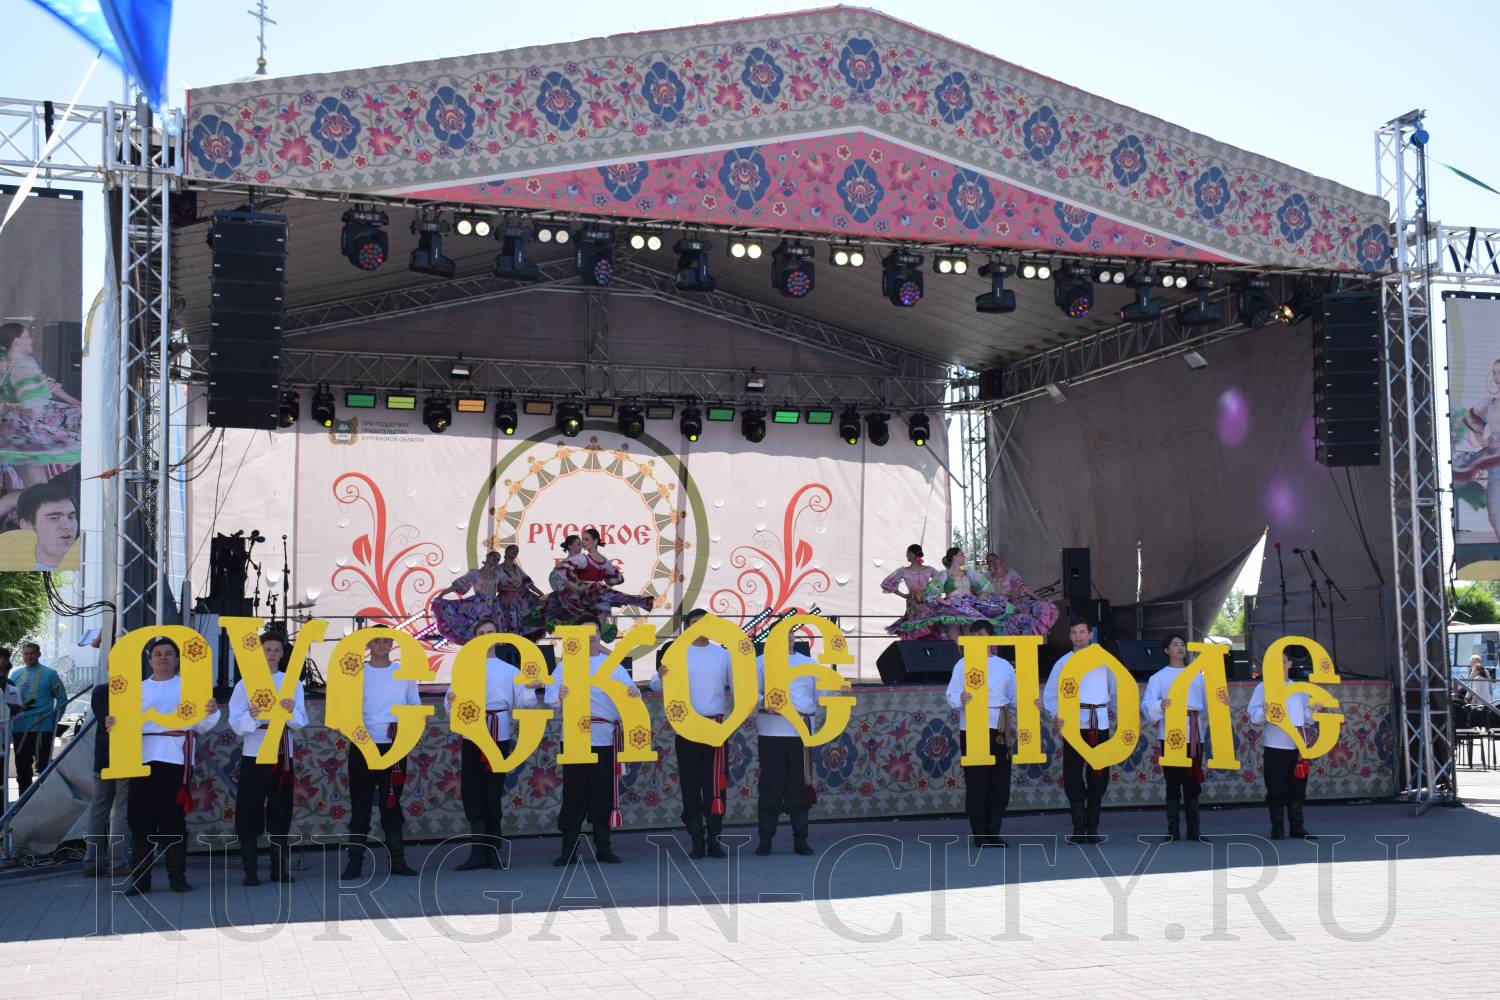 Курган отмечает День России масштабным фестивалем.